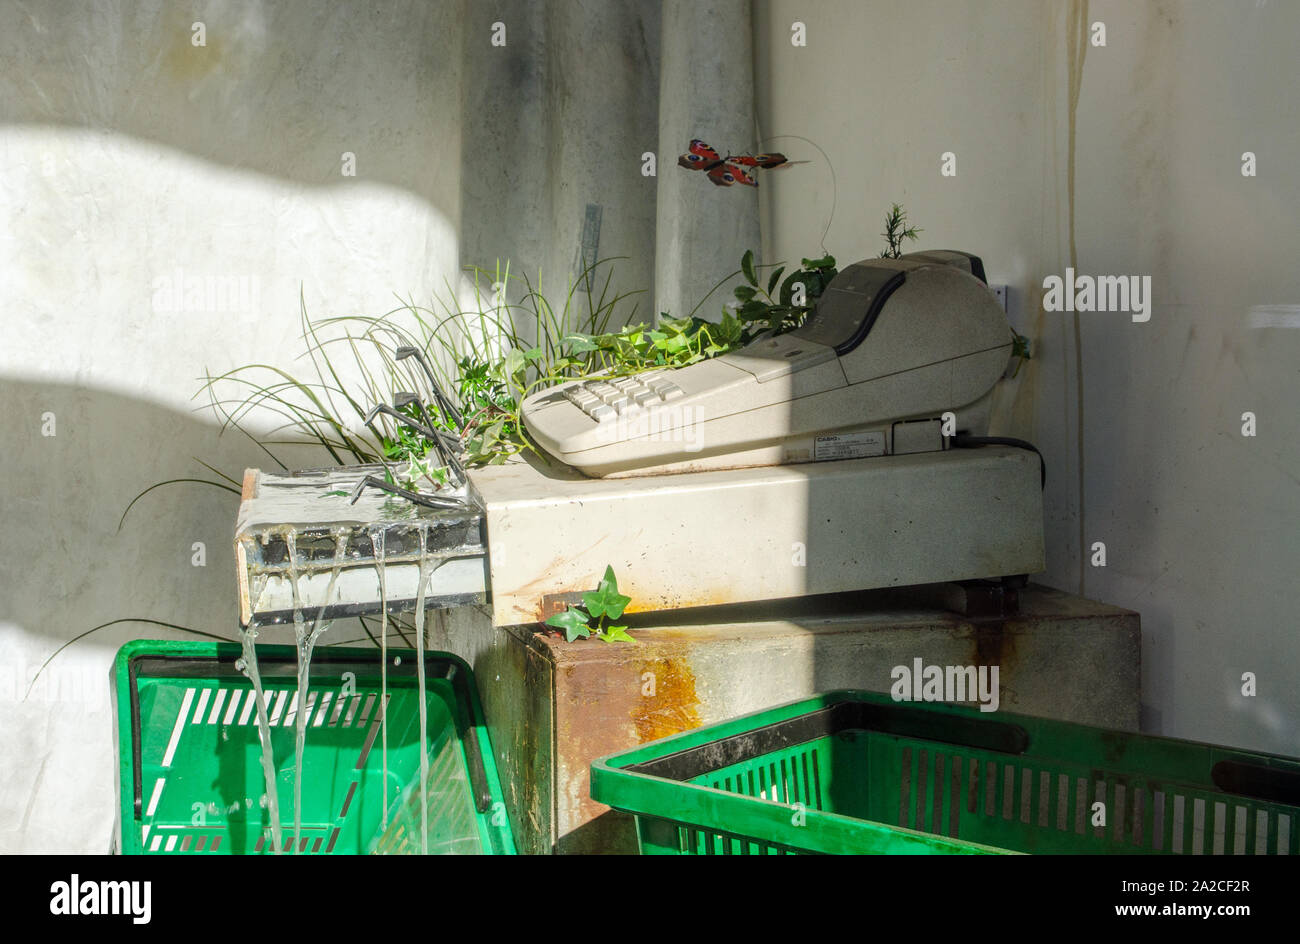 Londres, Royaume-Uni - Octobre 2, 2019 : l'eau qui sortait d'un tiroir-caisse entouré par les plantes et les insectes dans la fenêtre de Banksy's boutique temporaire dans la région de Croydon, Banque D'Images